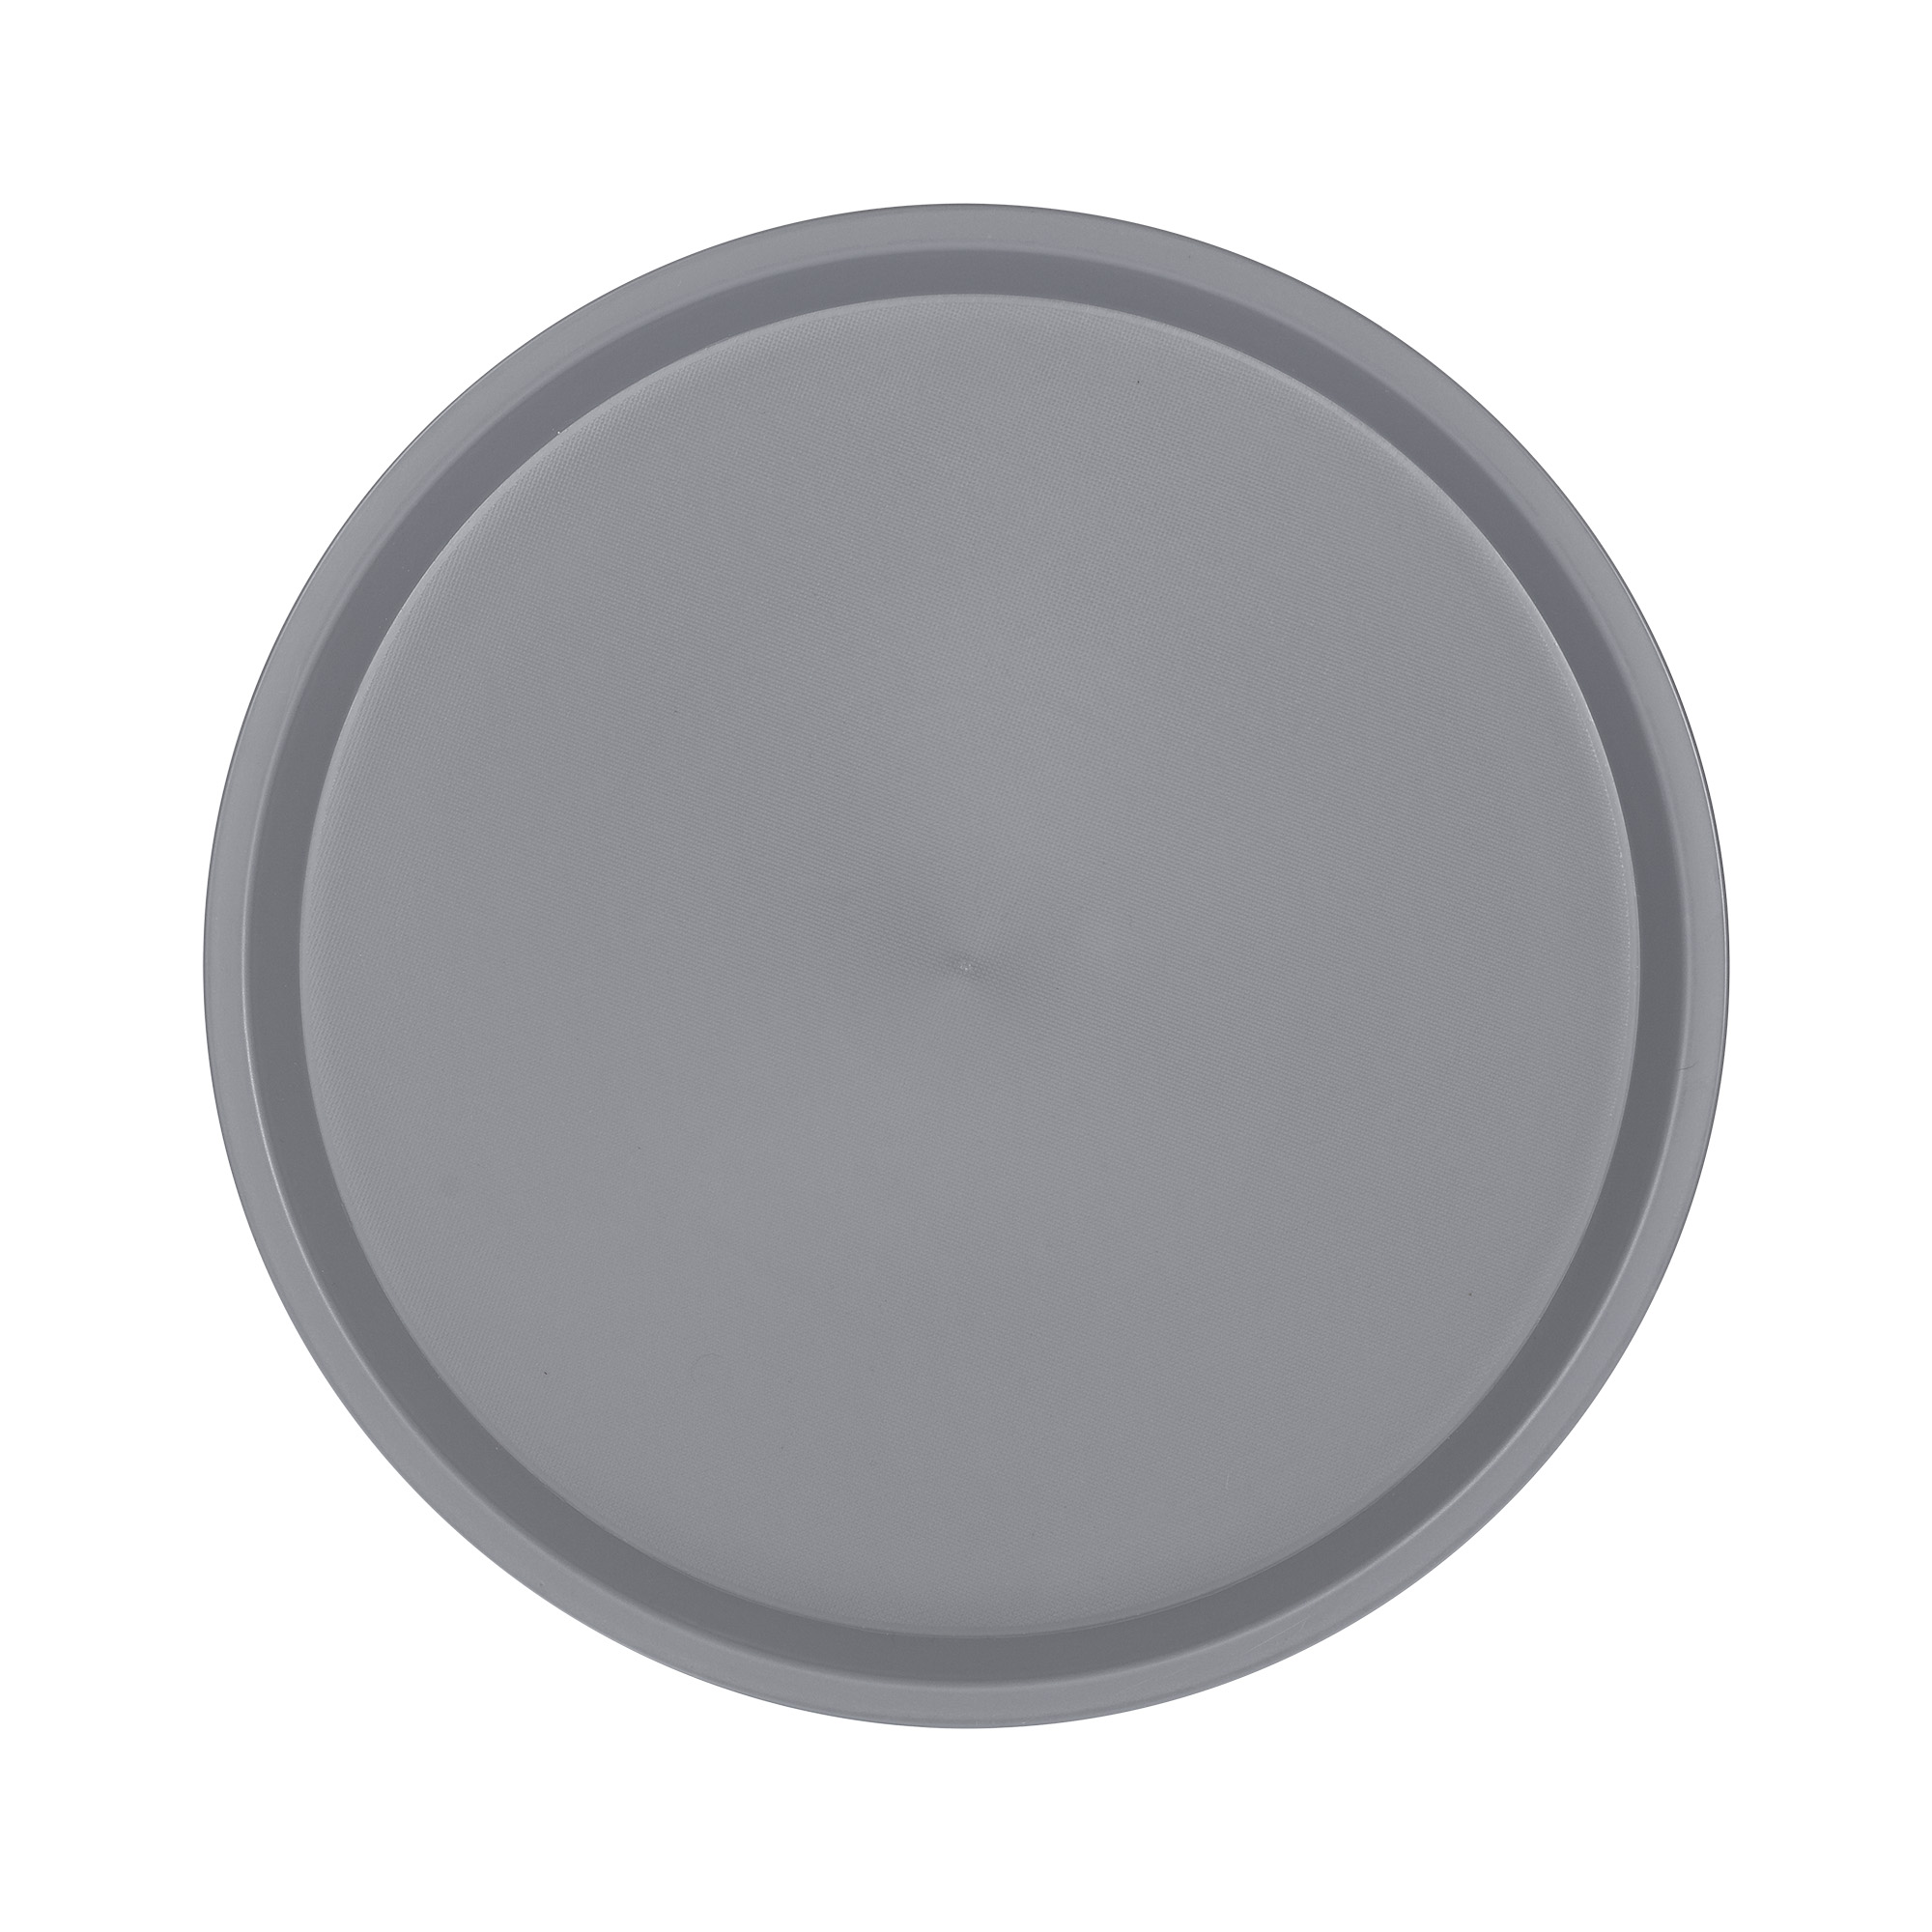 Serviertablett "OHIO", aus Kunststoff, Grau, rund, Maße ca.: Ø 36,5cm x H 2 cm, spülmaschinengeeignet, stapelbar,